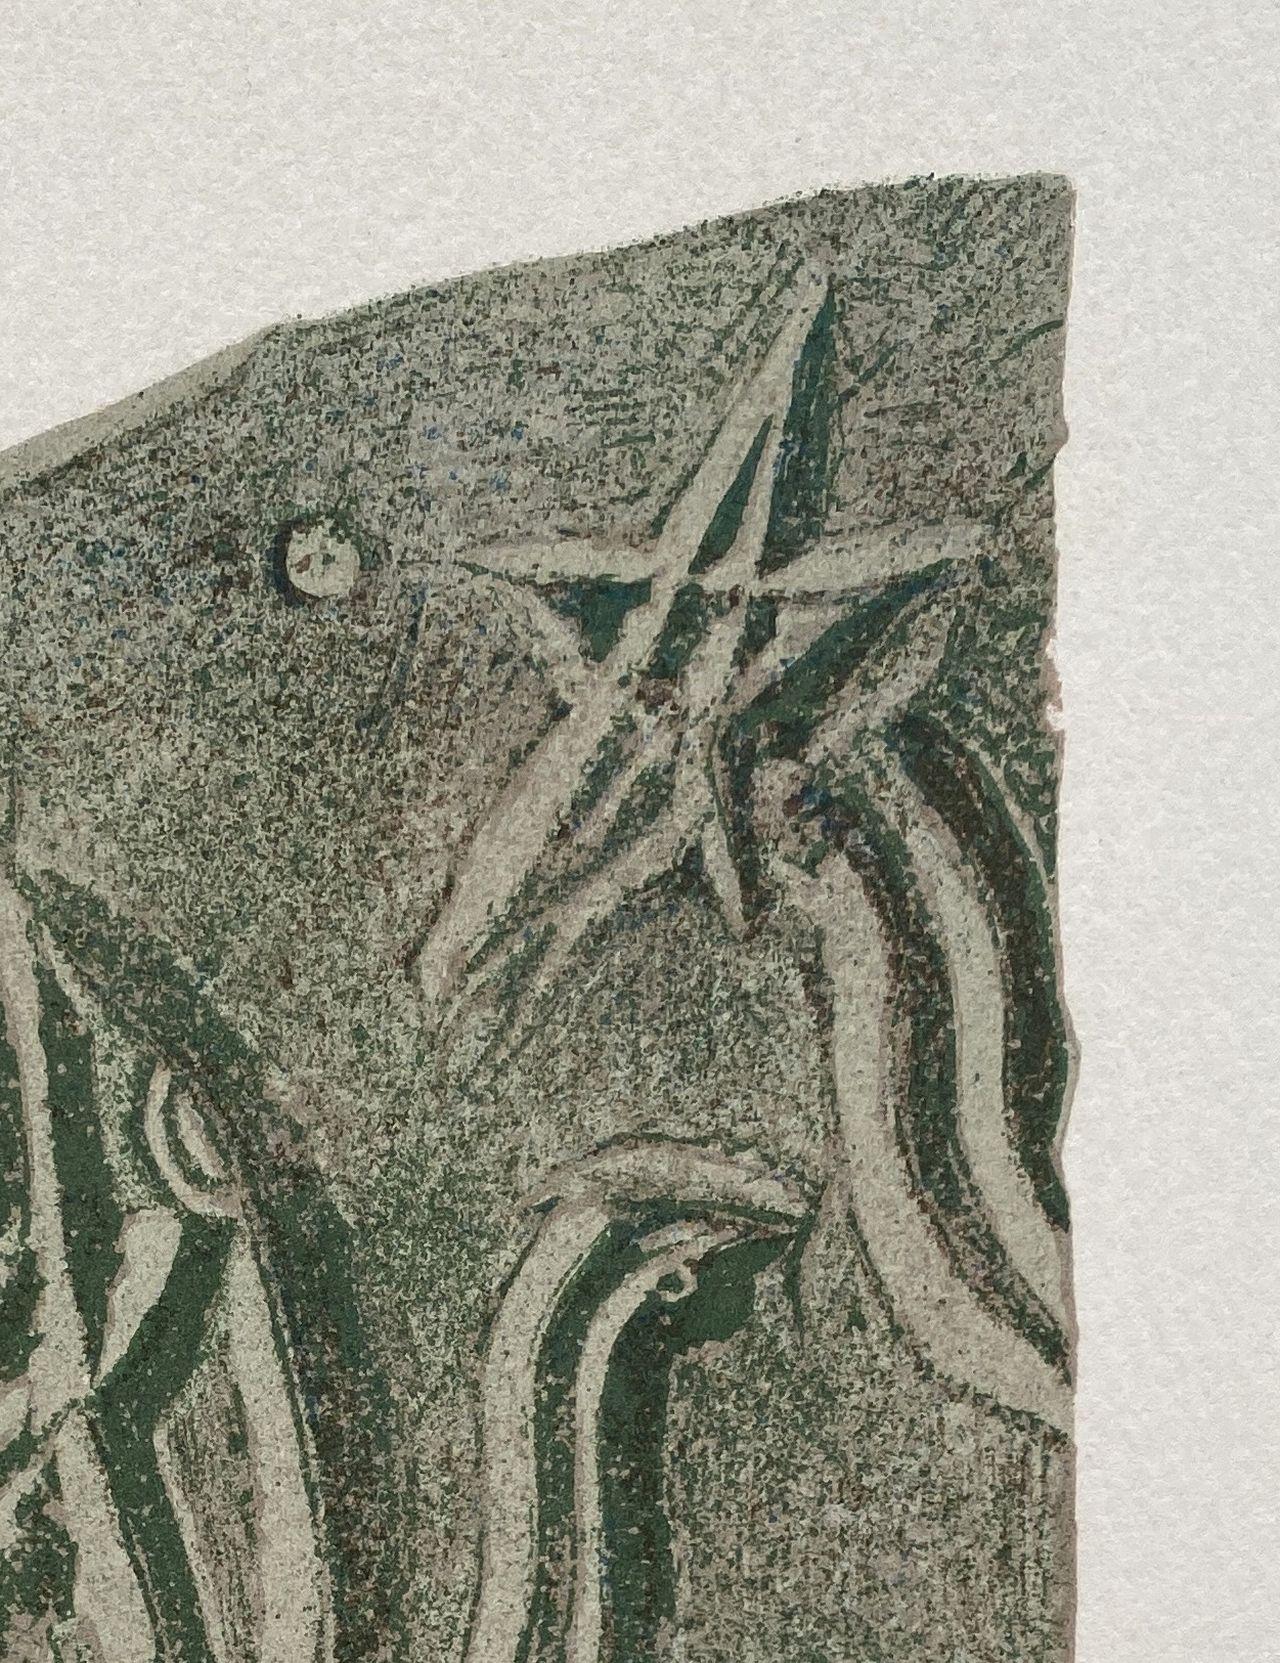 Georges BRAQUE
Vogel mit Stern, 1952

Lithographie in Farben
In der Platte signiert
Auflage von 400 Exemplaren
Auf Vellum im Format 38 x 28 cm (ca. 15 x 11 Zoll)

REFERENZ : Gesamtkatalog Orozco #LO662

Sehr guter Zustand